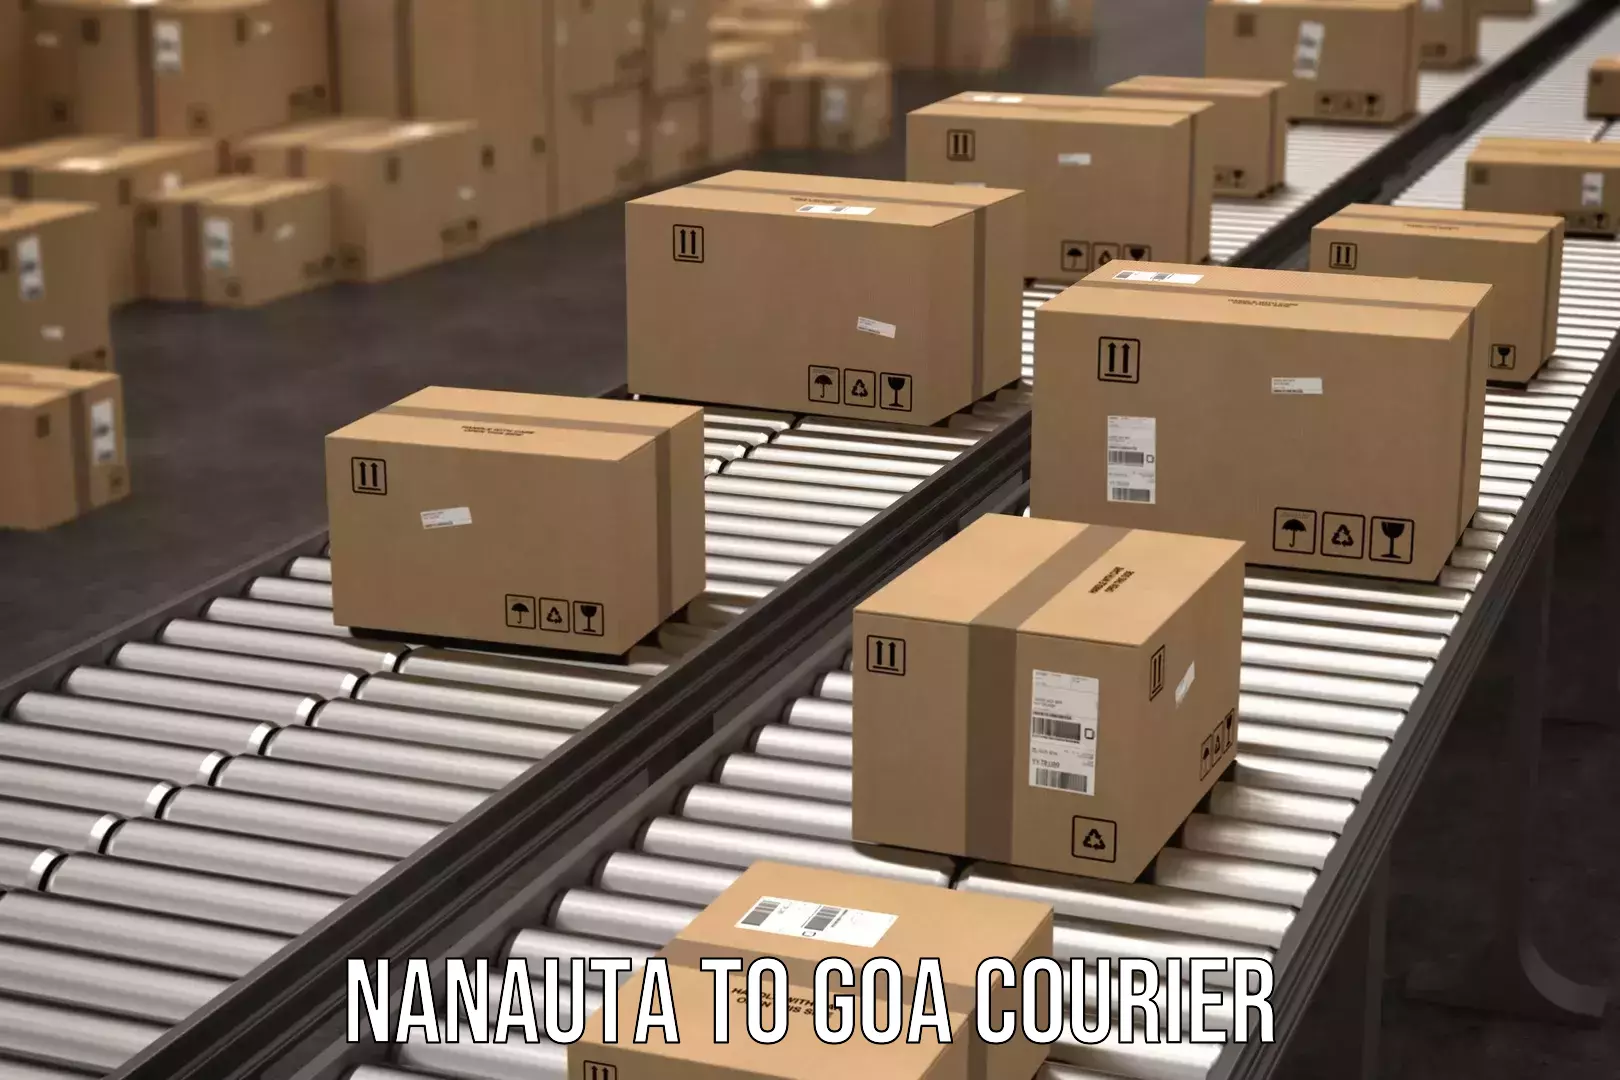 Express package handling Nanauta to South Goa